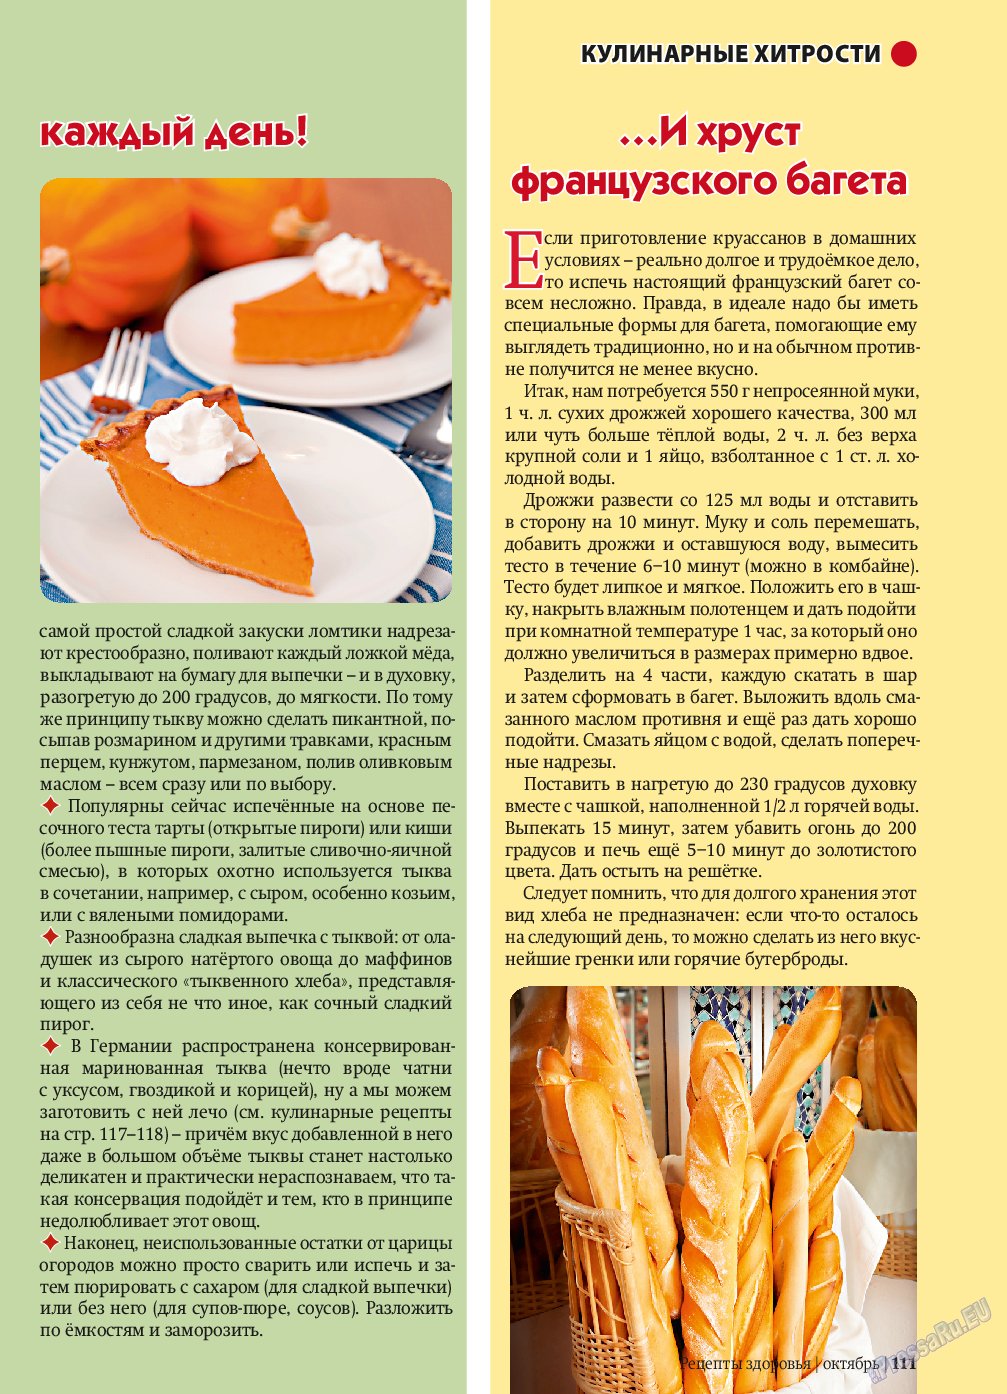 Рецепты здоровья, журнал. 2013 №10 стр.111